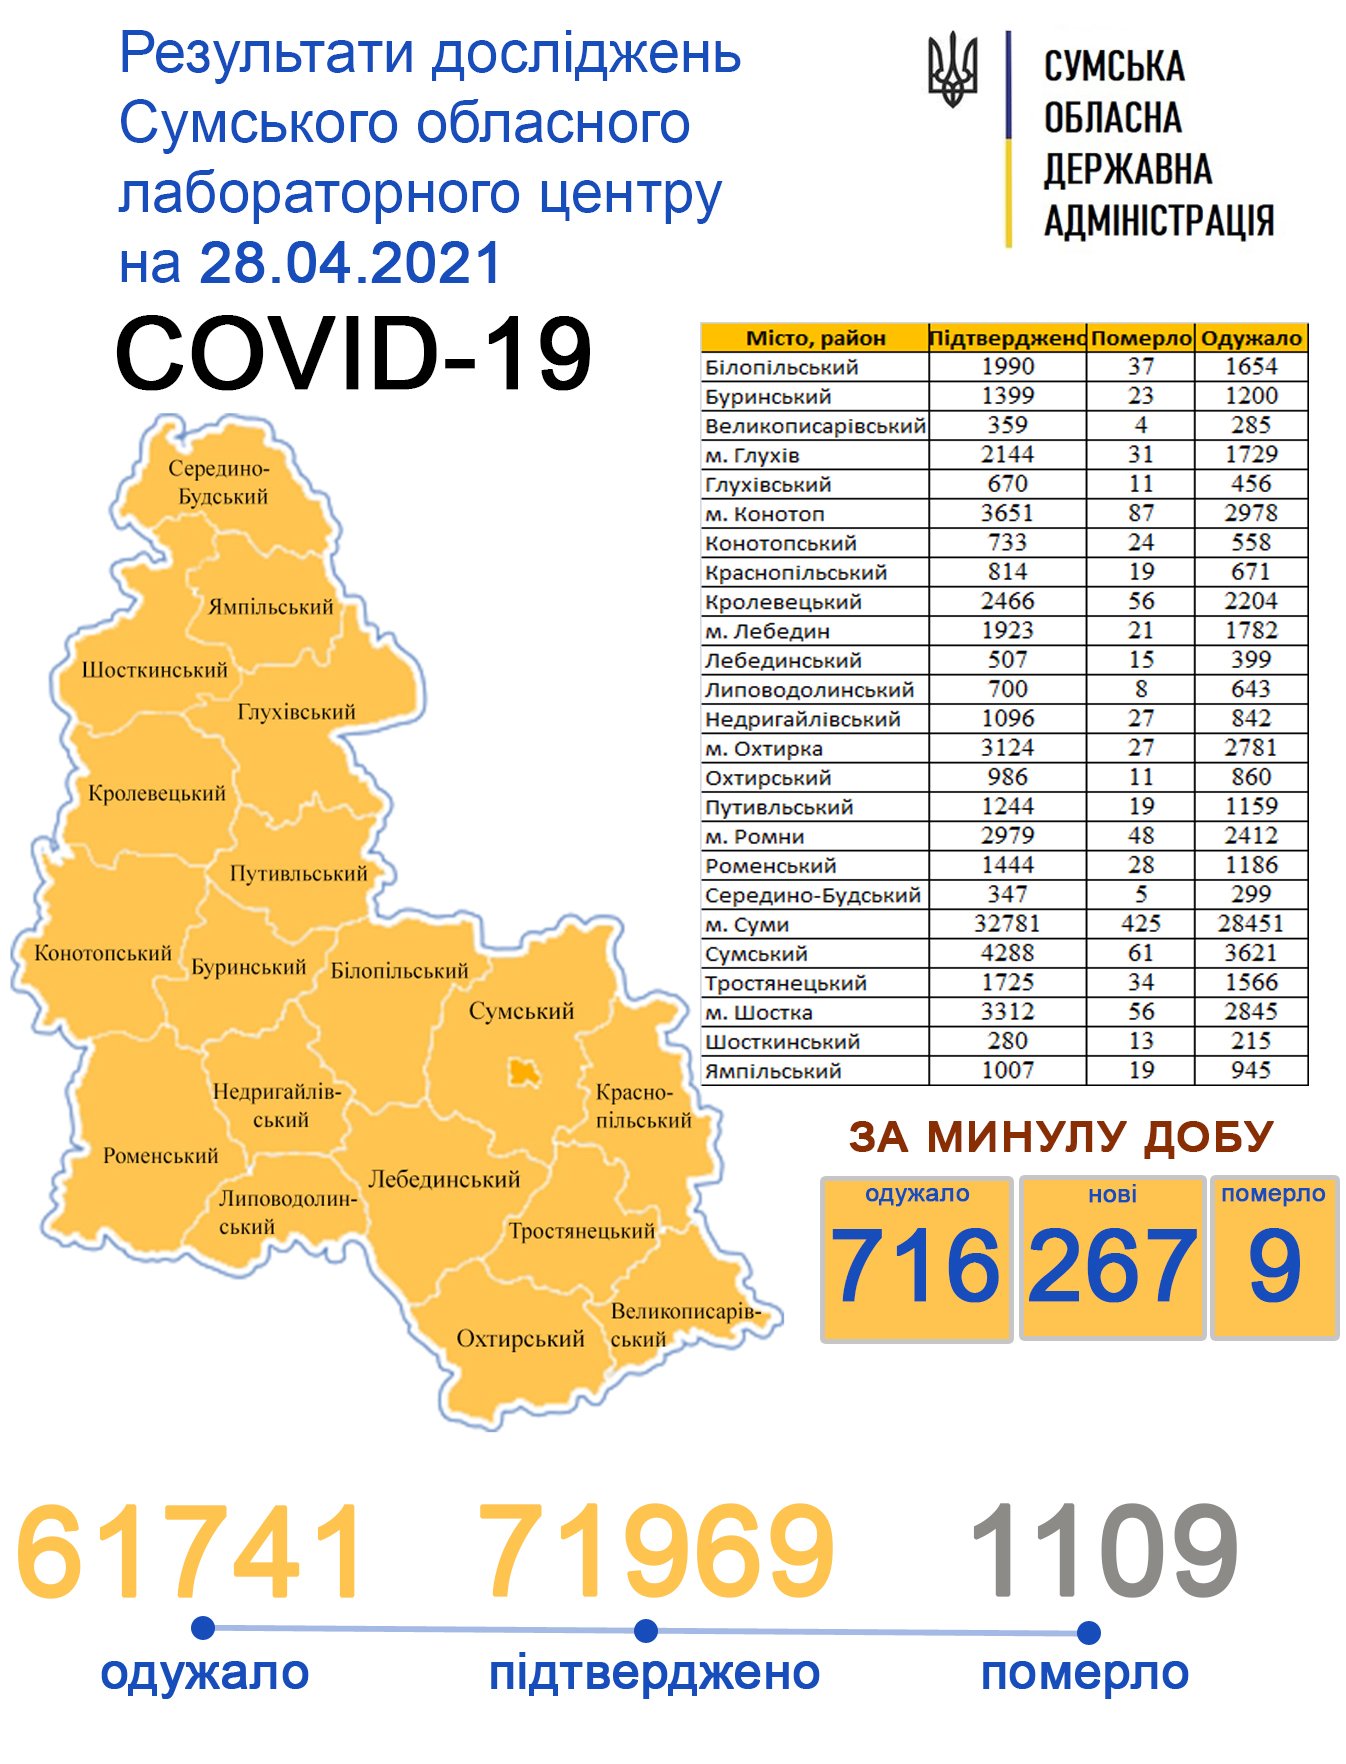    Covid-19   267  